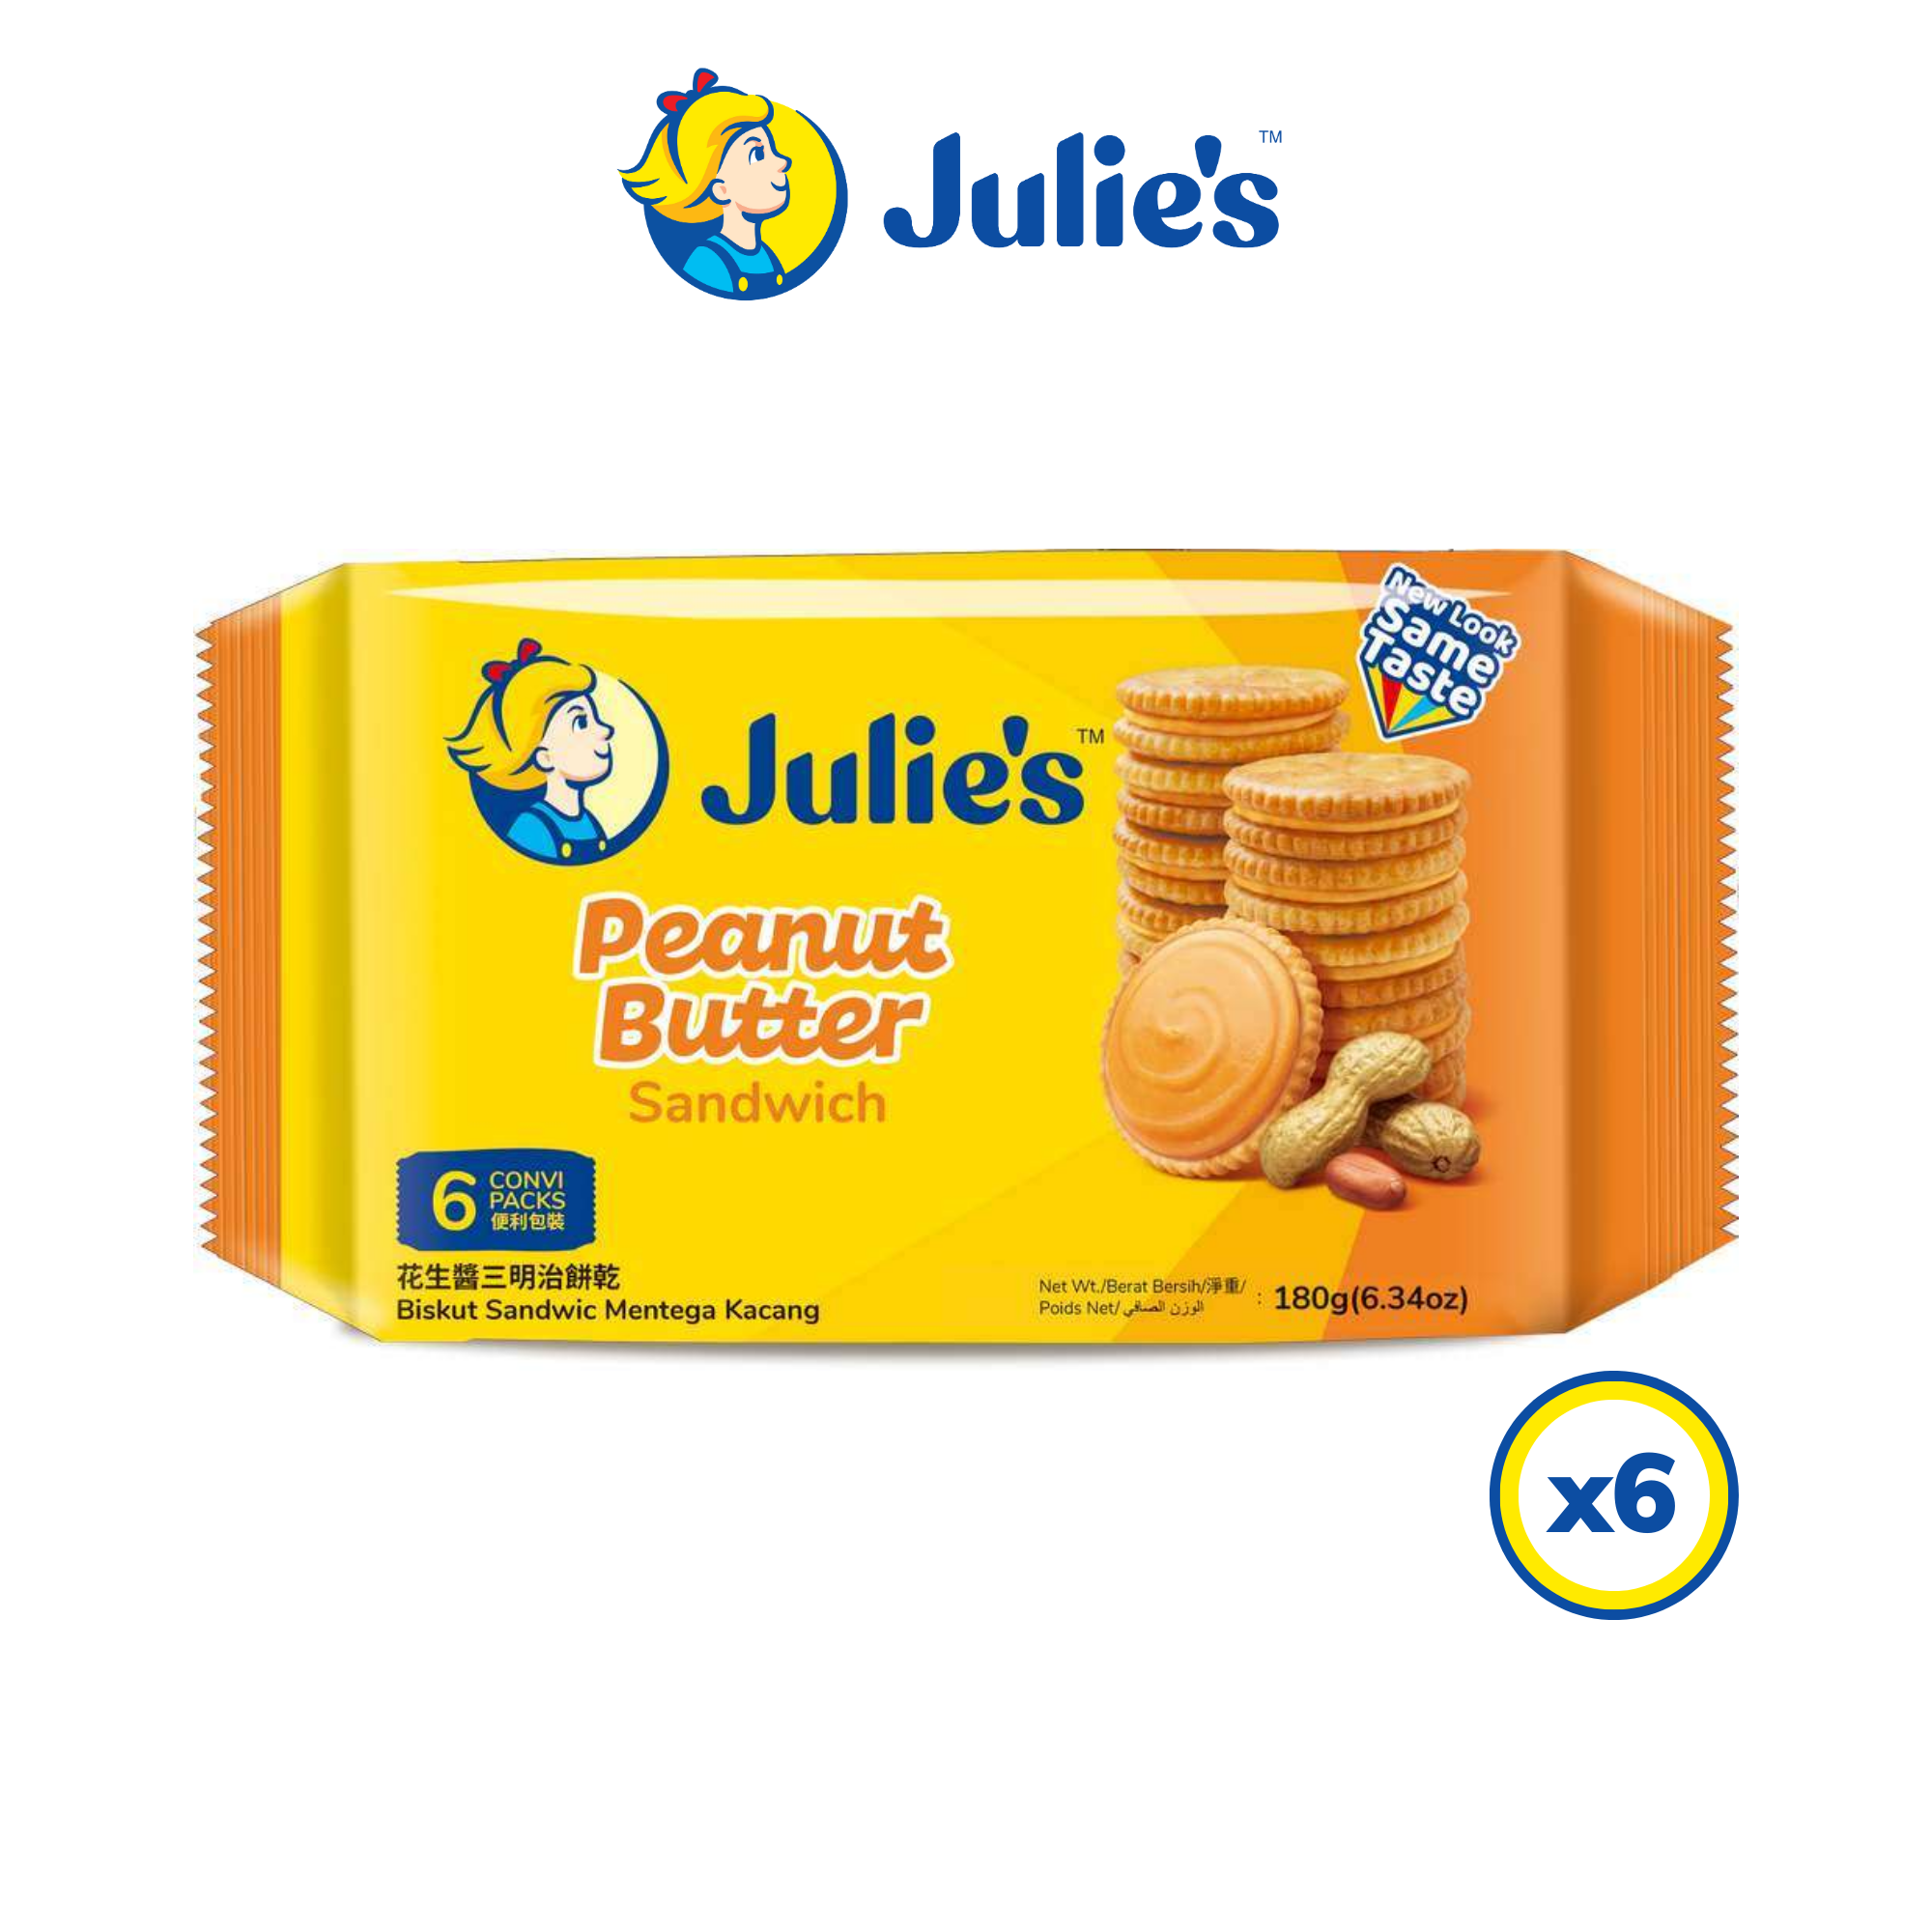 Julie's Peanut Butter Sandwich 180g x 6 packs